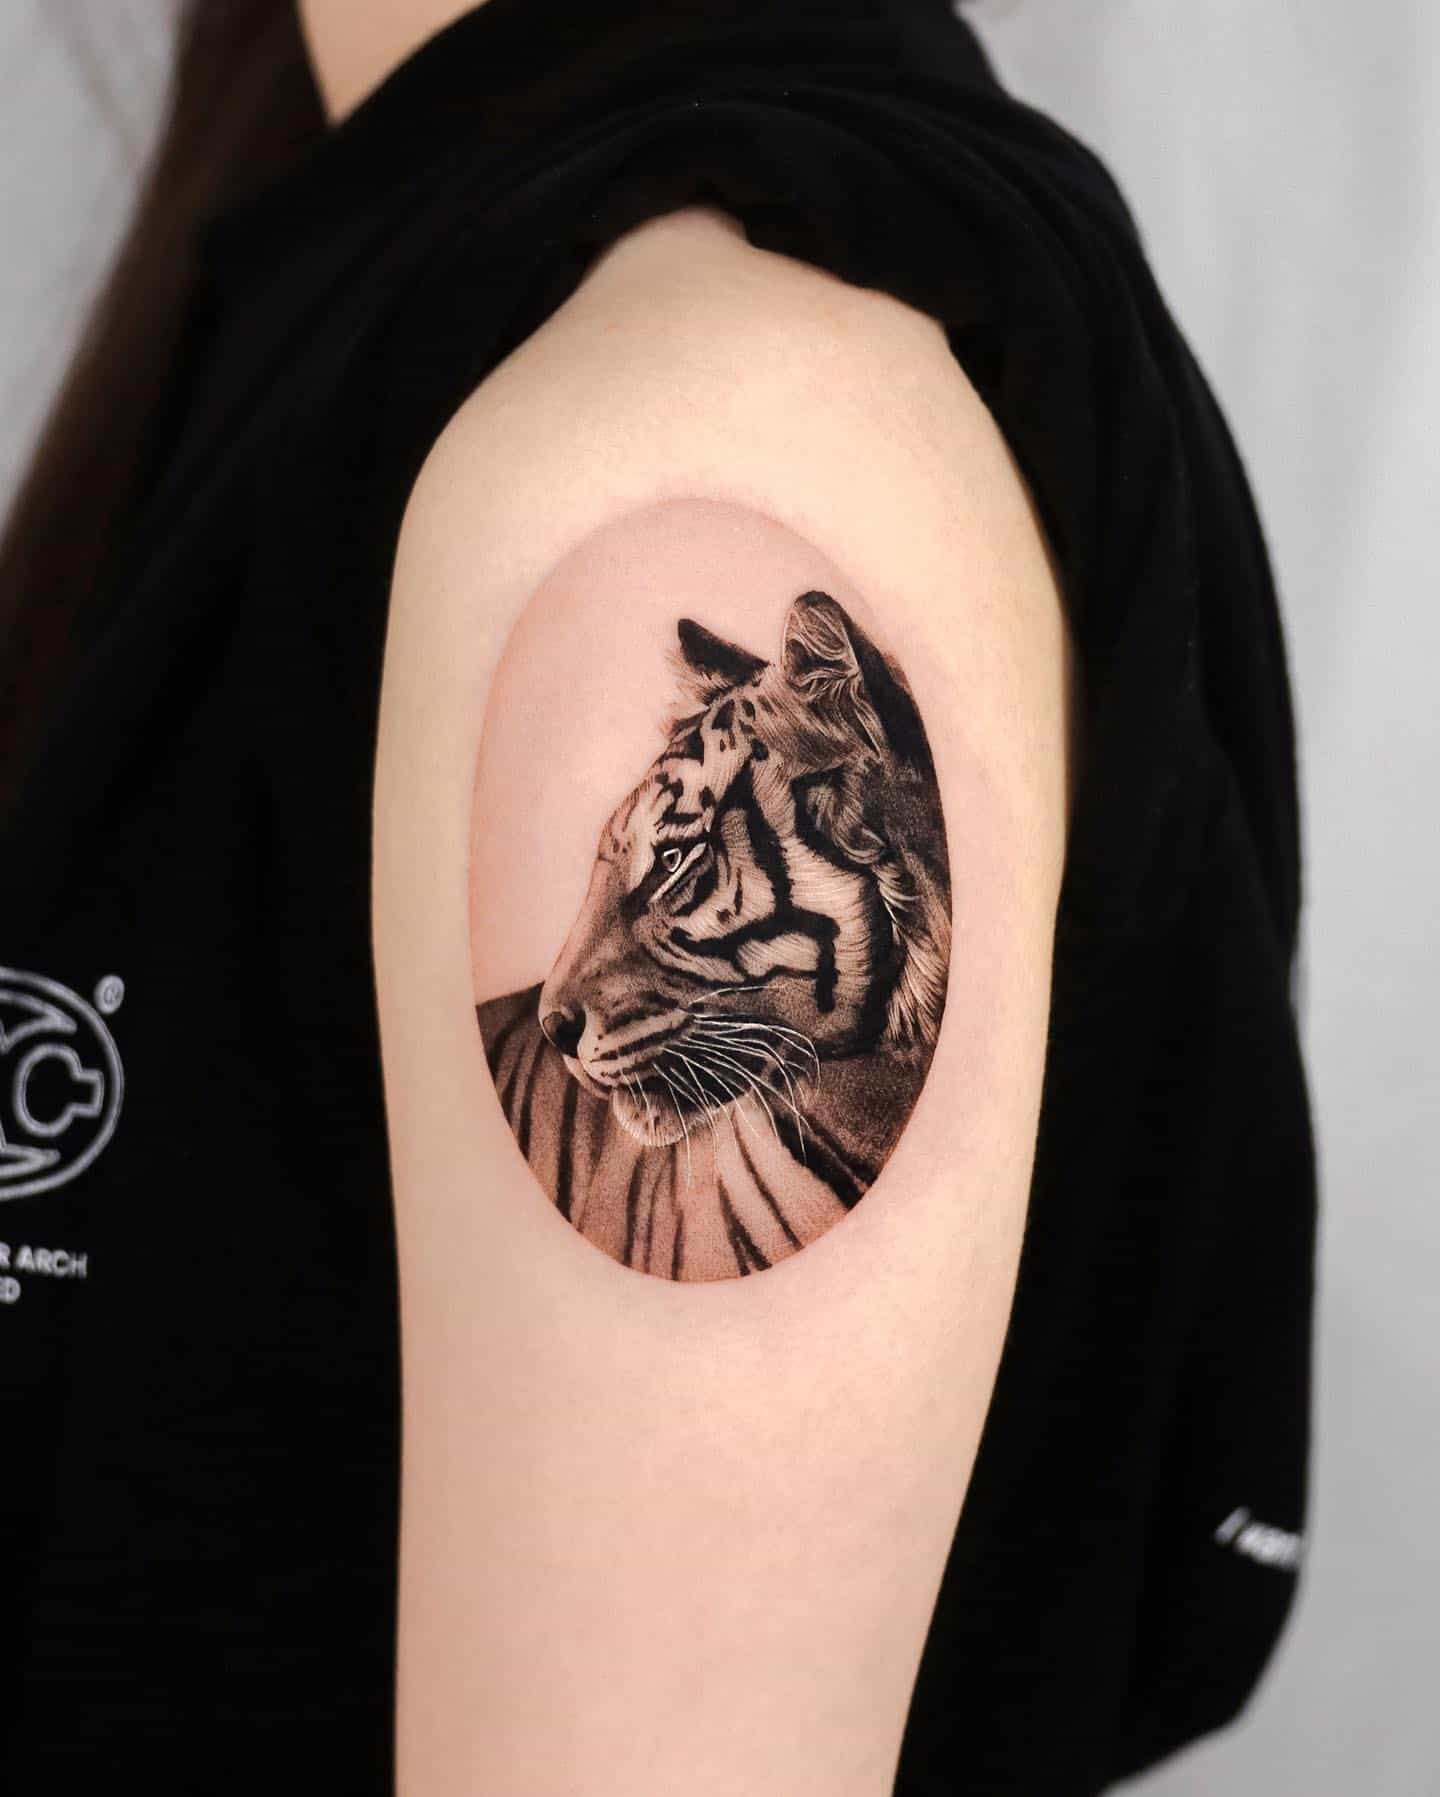 Tiger Tattoo Ideas 31